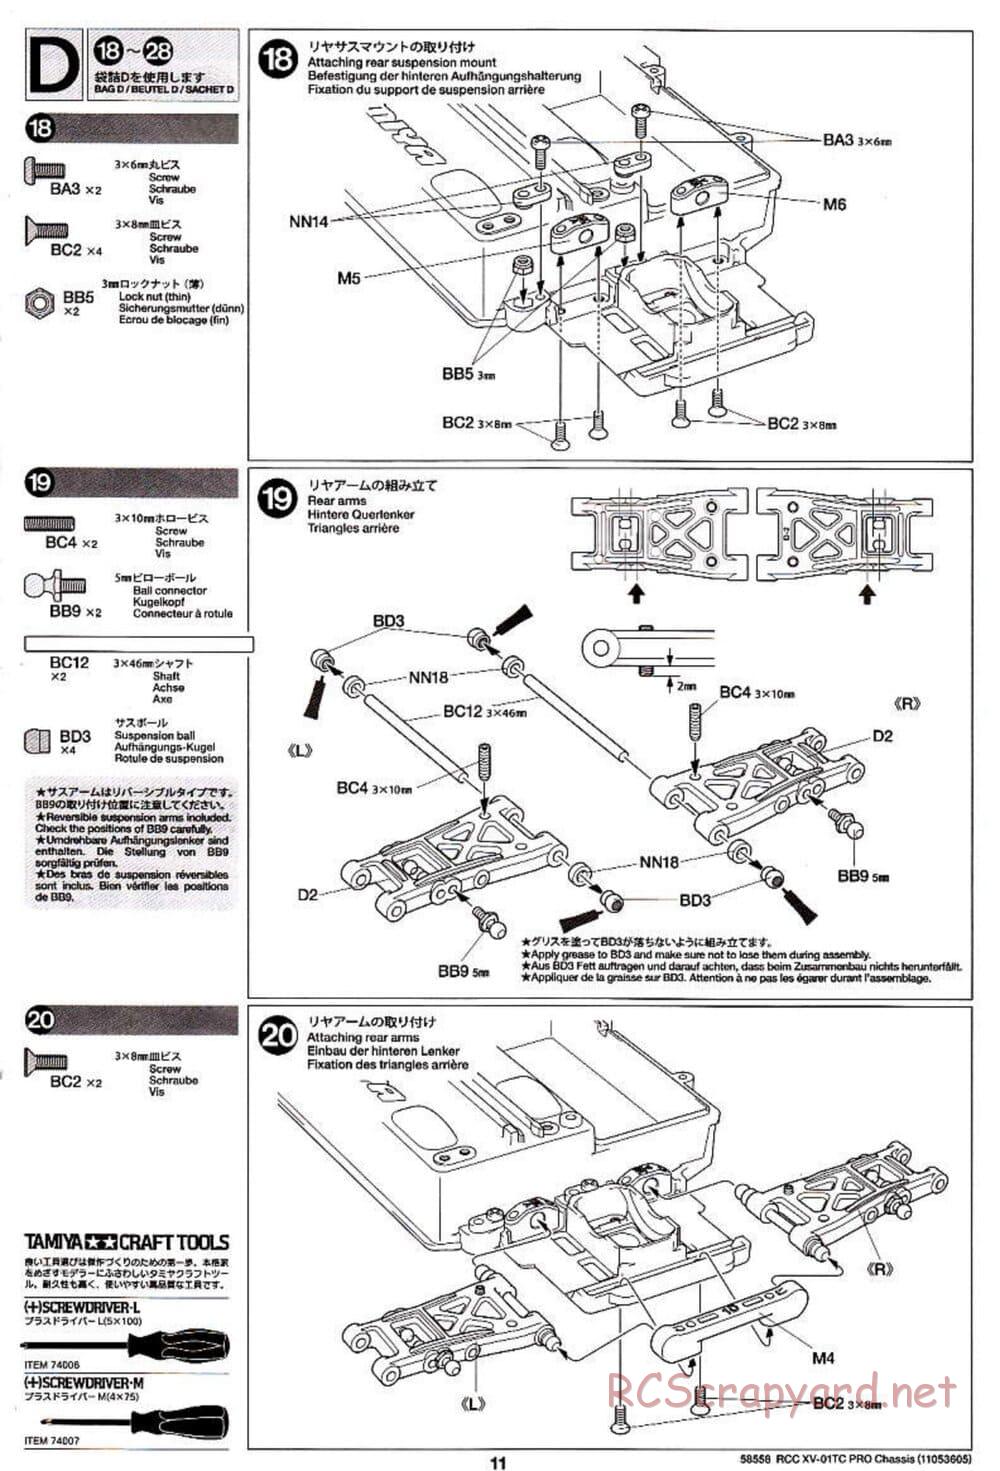 Tamiya - XV-01TC Chassis - Manual - Page 11